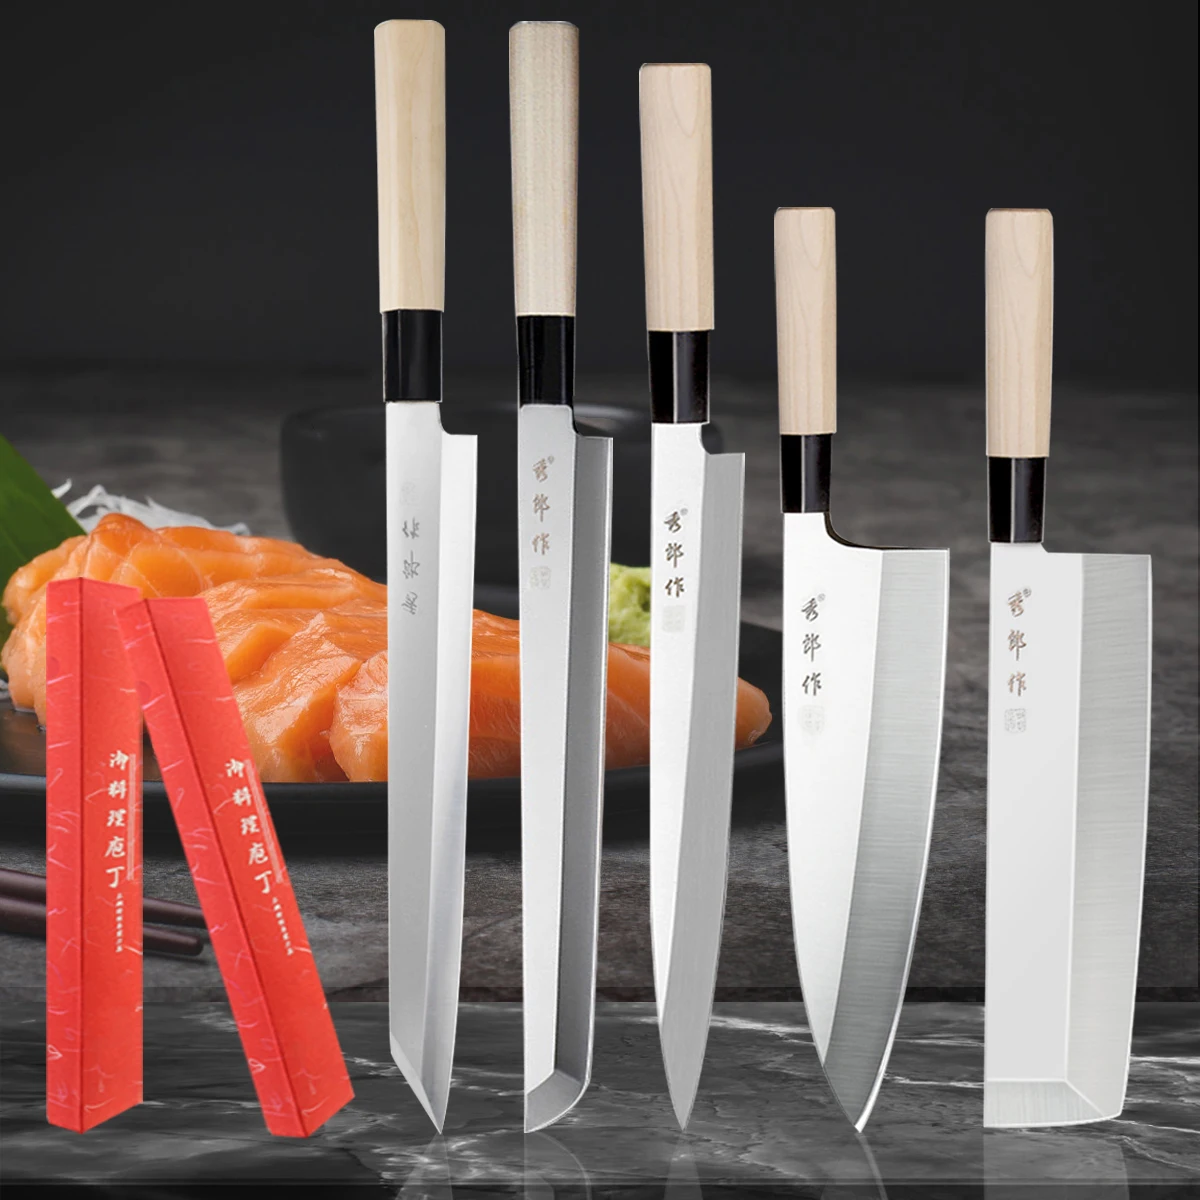 Профессиональный нож для рыбы, японский нож для сашими, суши, лосося, говядины, нож шеф-повара, кухонный нож, кухонные ножи для готовки, ножи для мясника, нож для нарезки